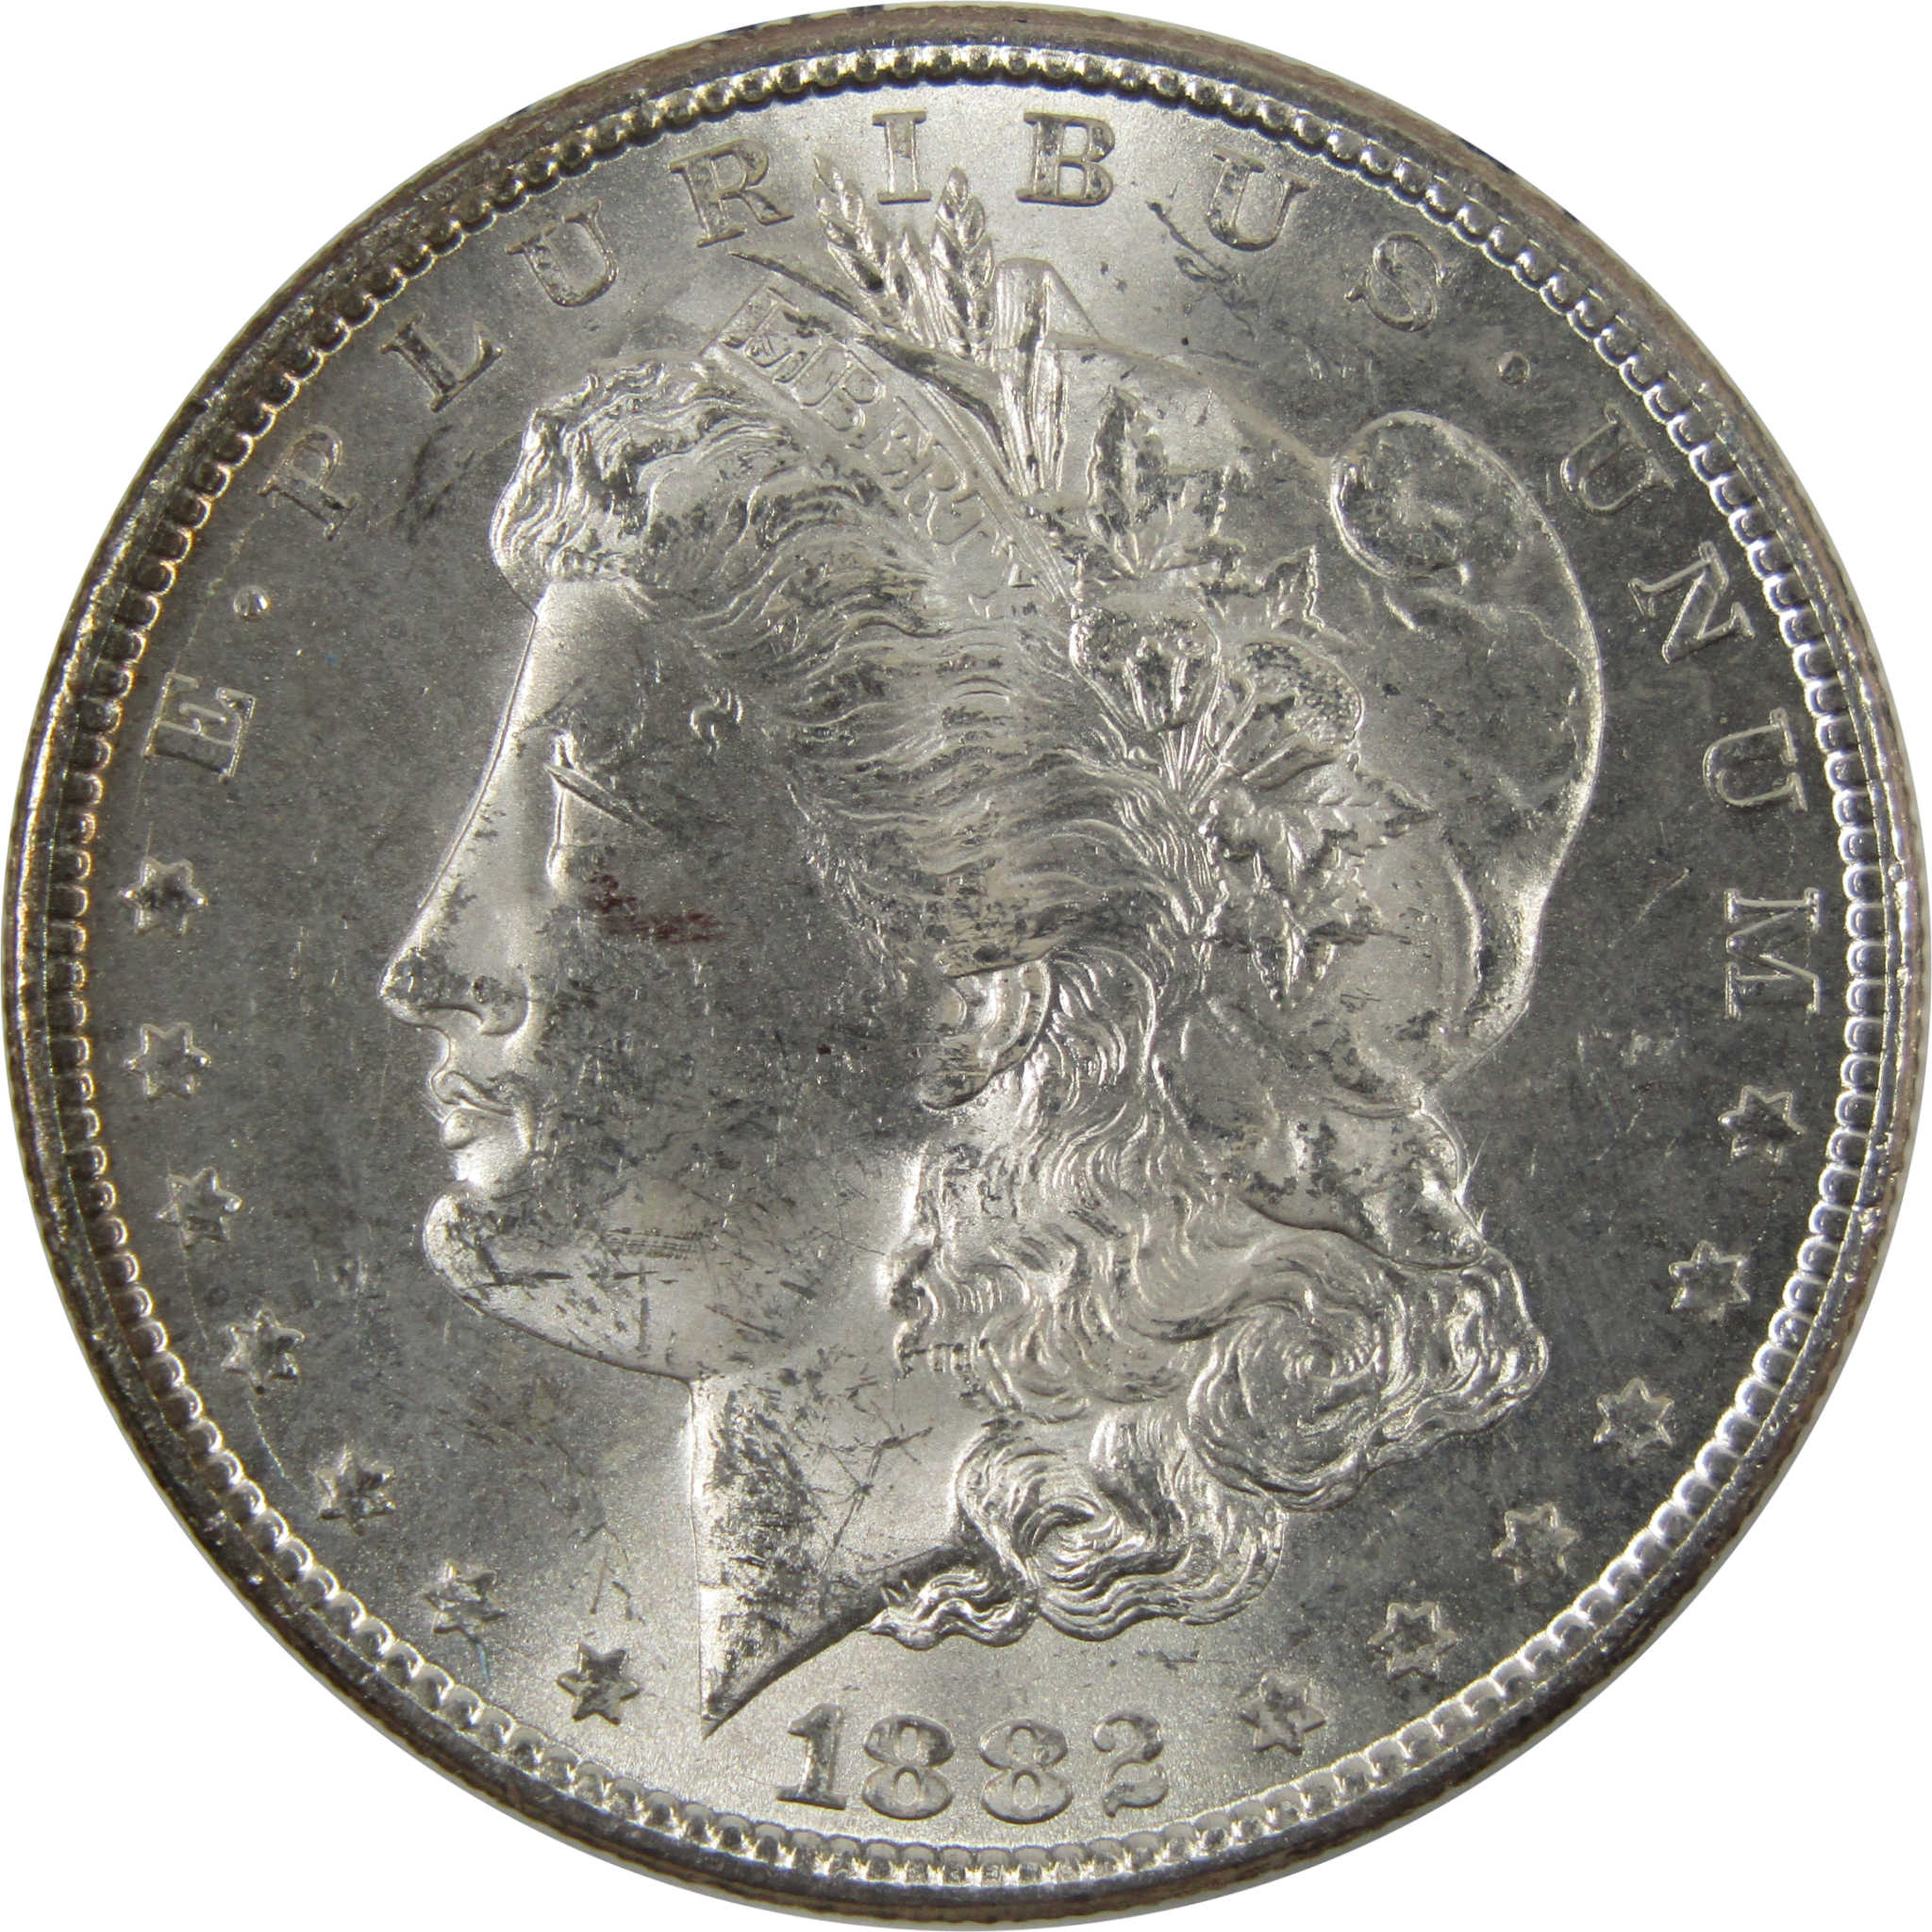 1882 CC Morgan Dollar BU Uncirculated 90% Silver $1 Coin SKU:CPC4400 - Morgan coin - Morgan silver dollar - Morgan silver dollar for sale - Profile Coins &amp; Collectibles